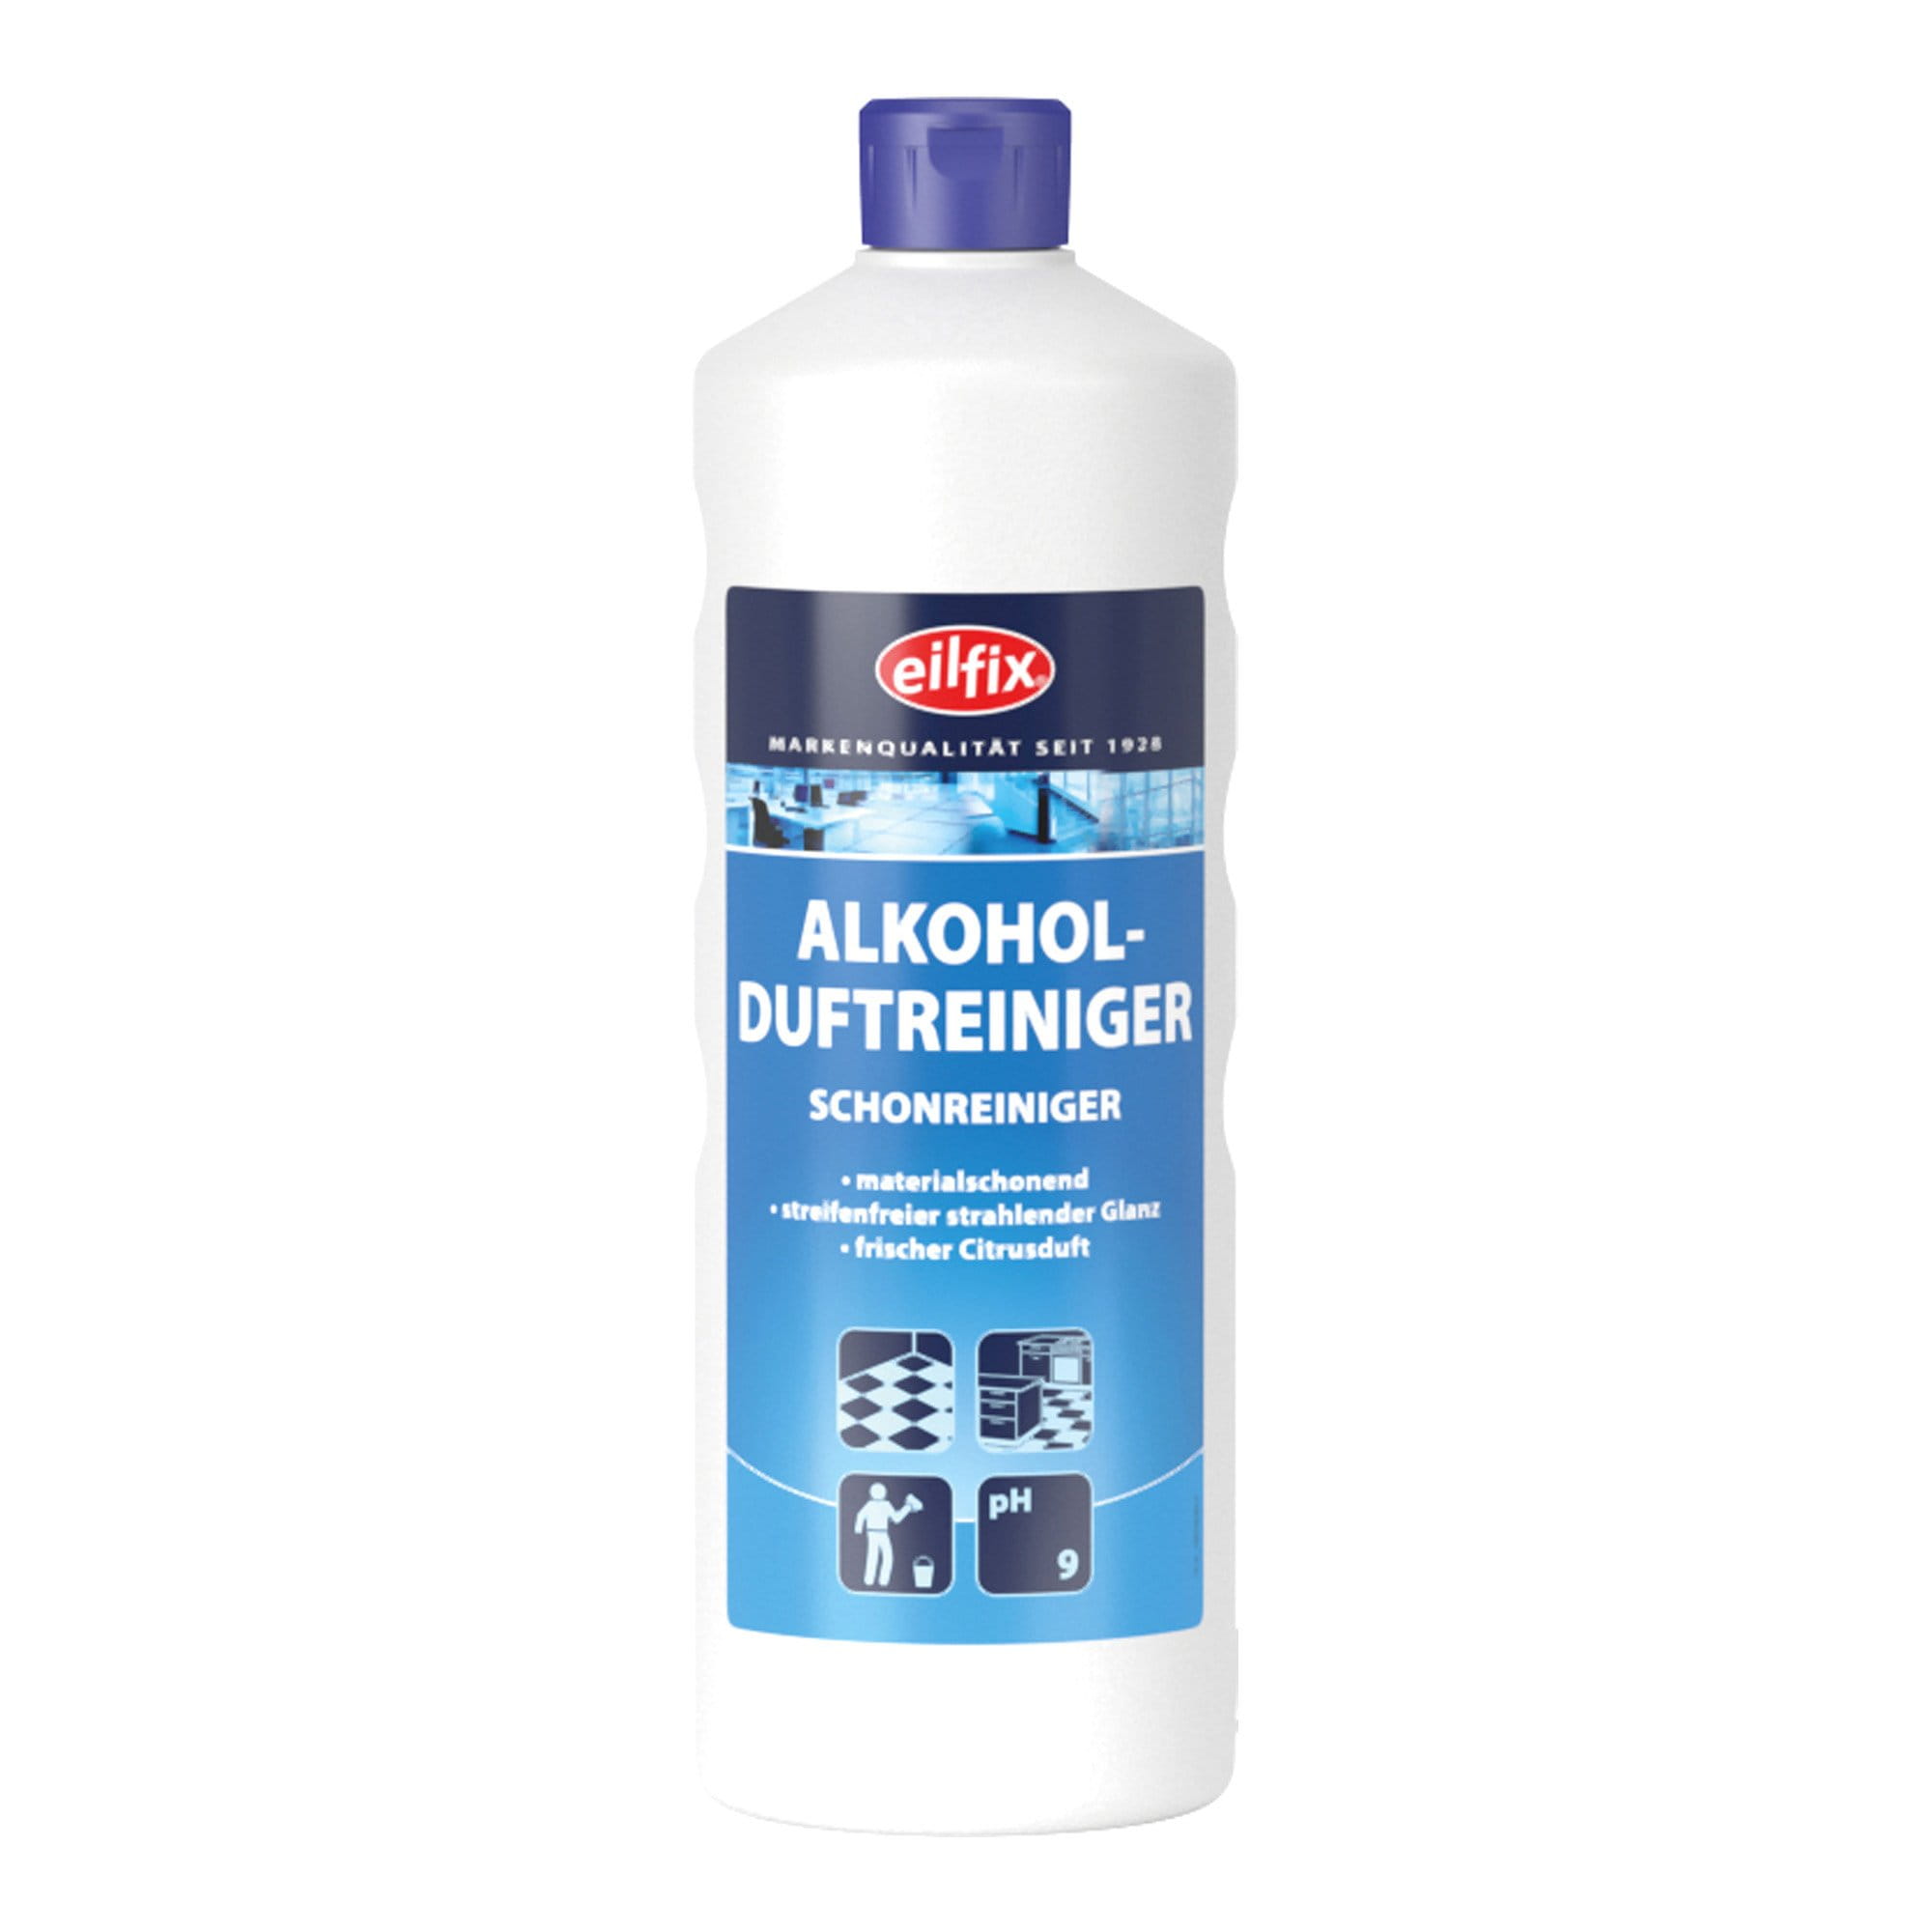 Eilfix Alkoholduftreiniger 1 Liter Flasche 100029-001-000_1